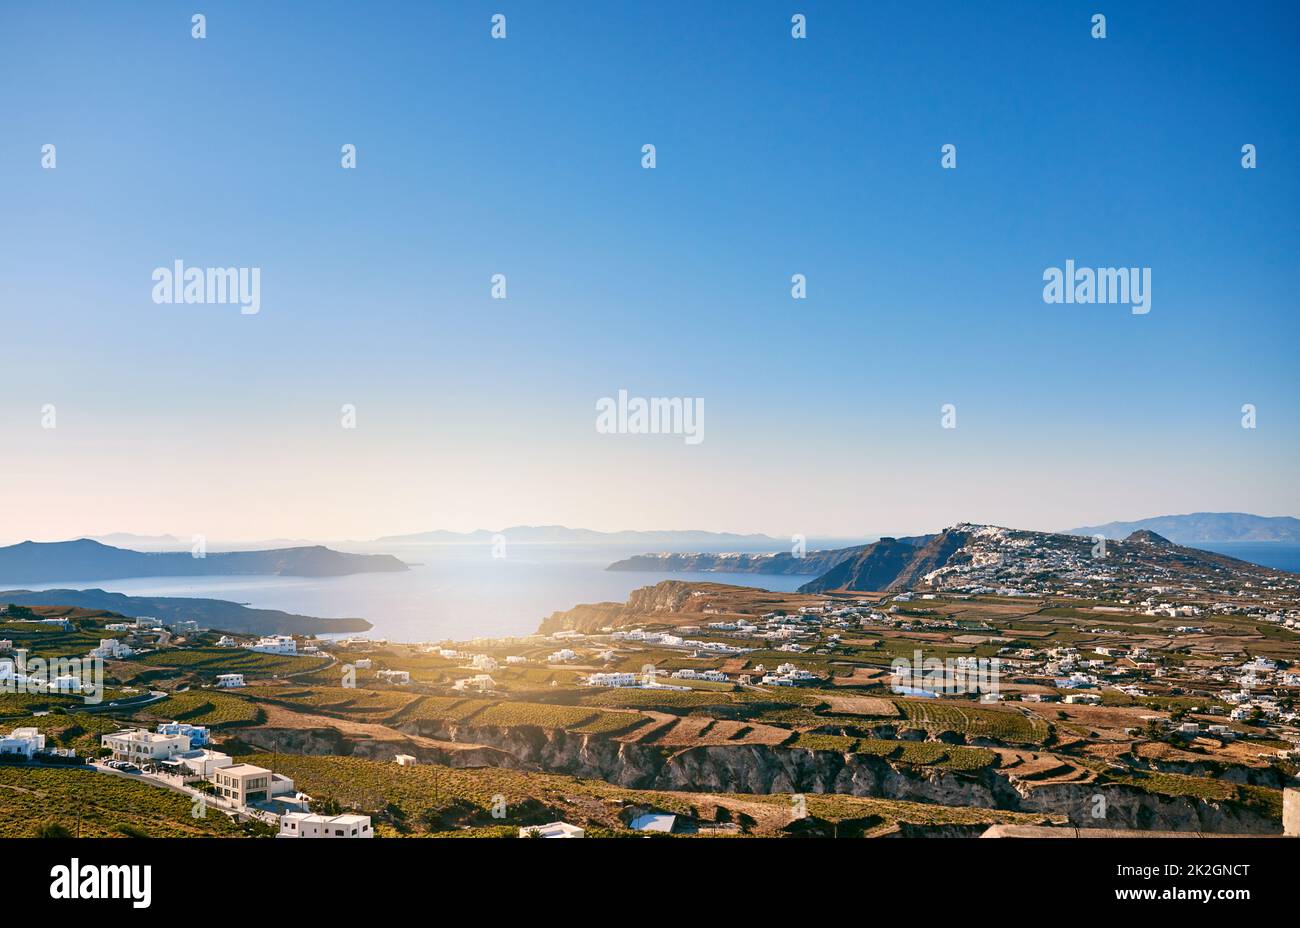 La terra si estende per chilometri. Sfondo di un bellissimo paesaggio costierino nel mediterraneo durante il giorno. Foto Stock